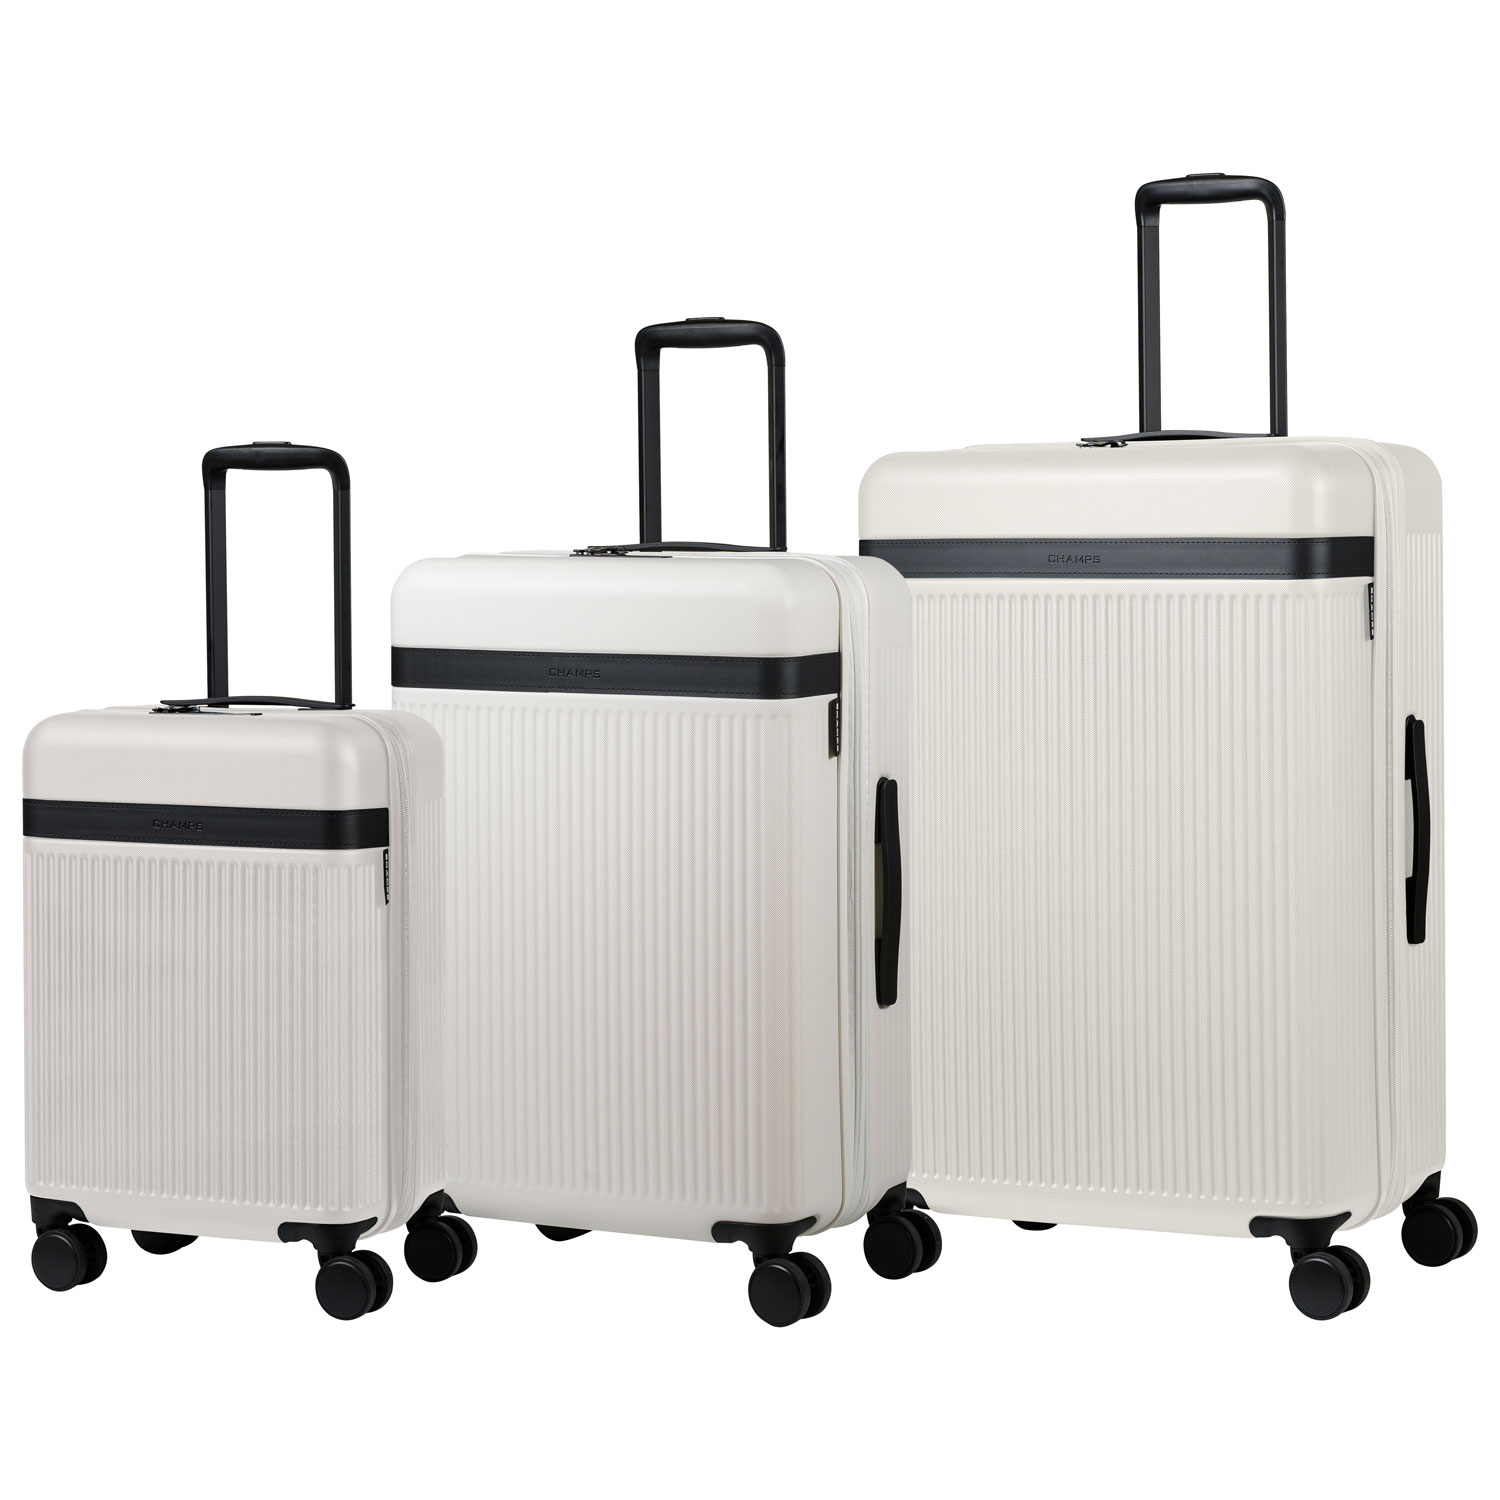 Luggage & Luggage Sets